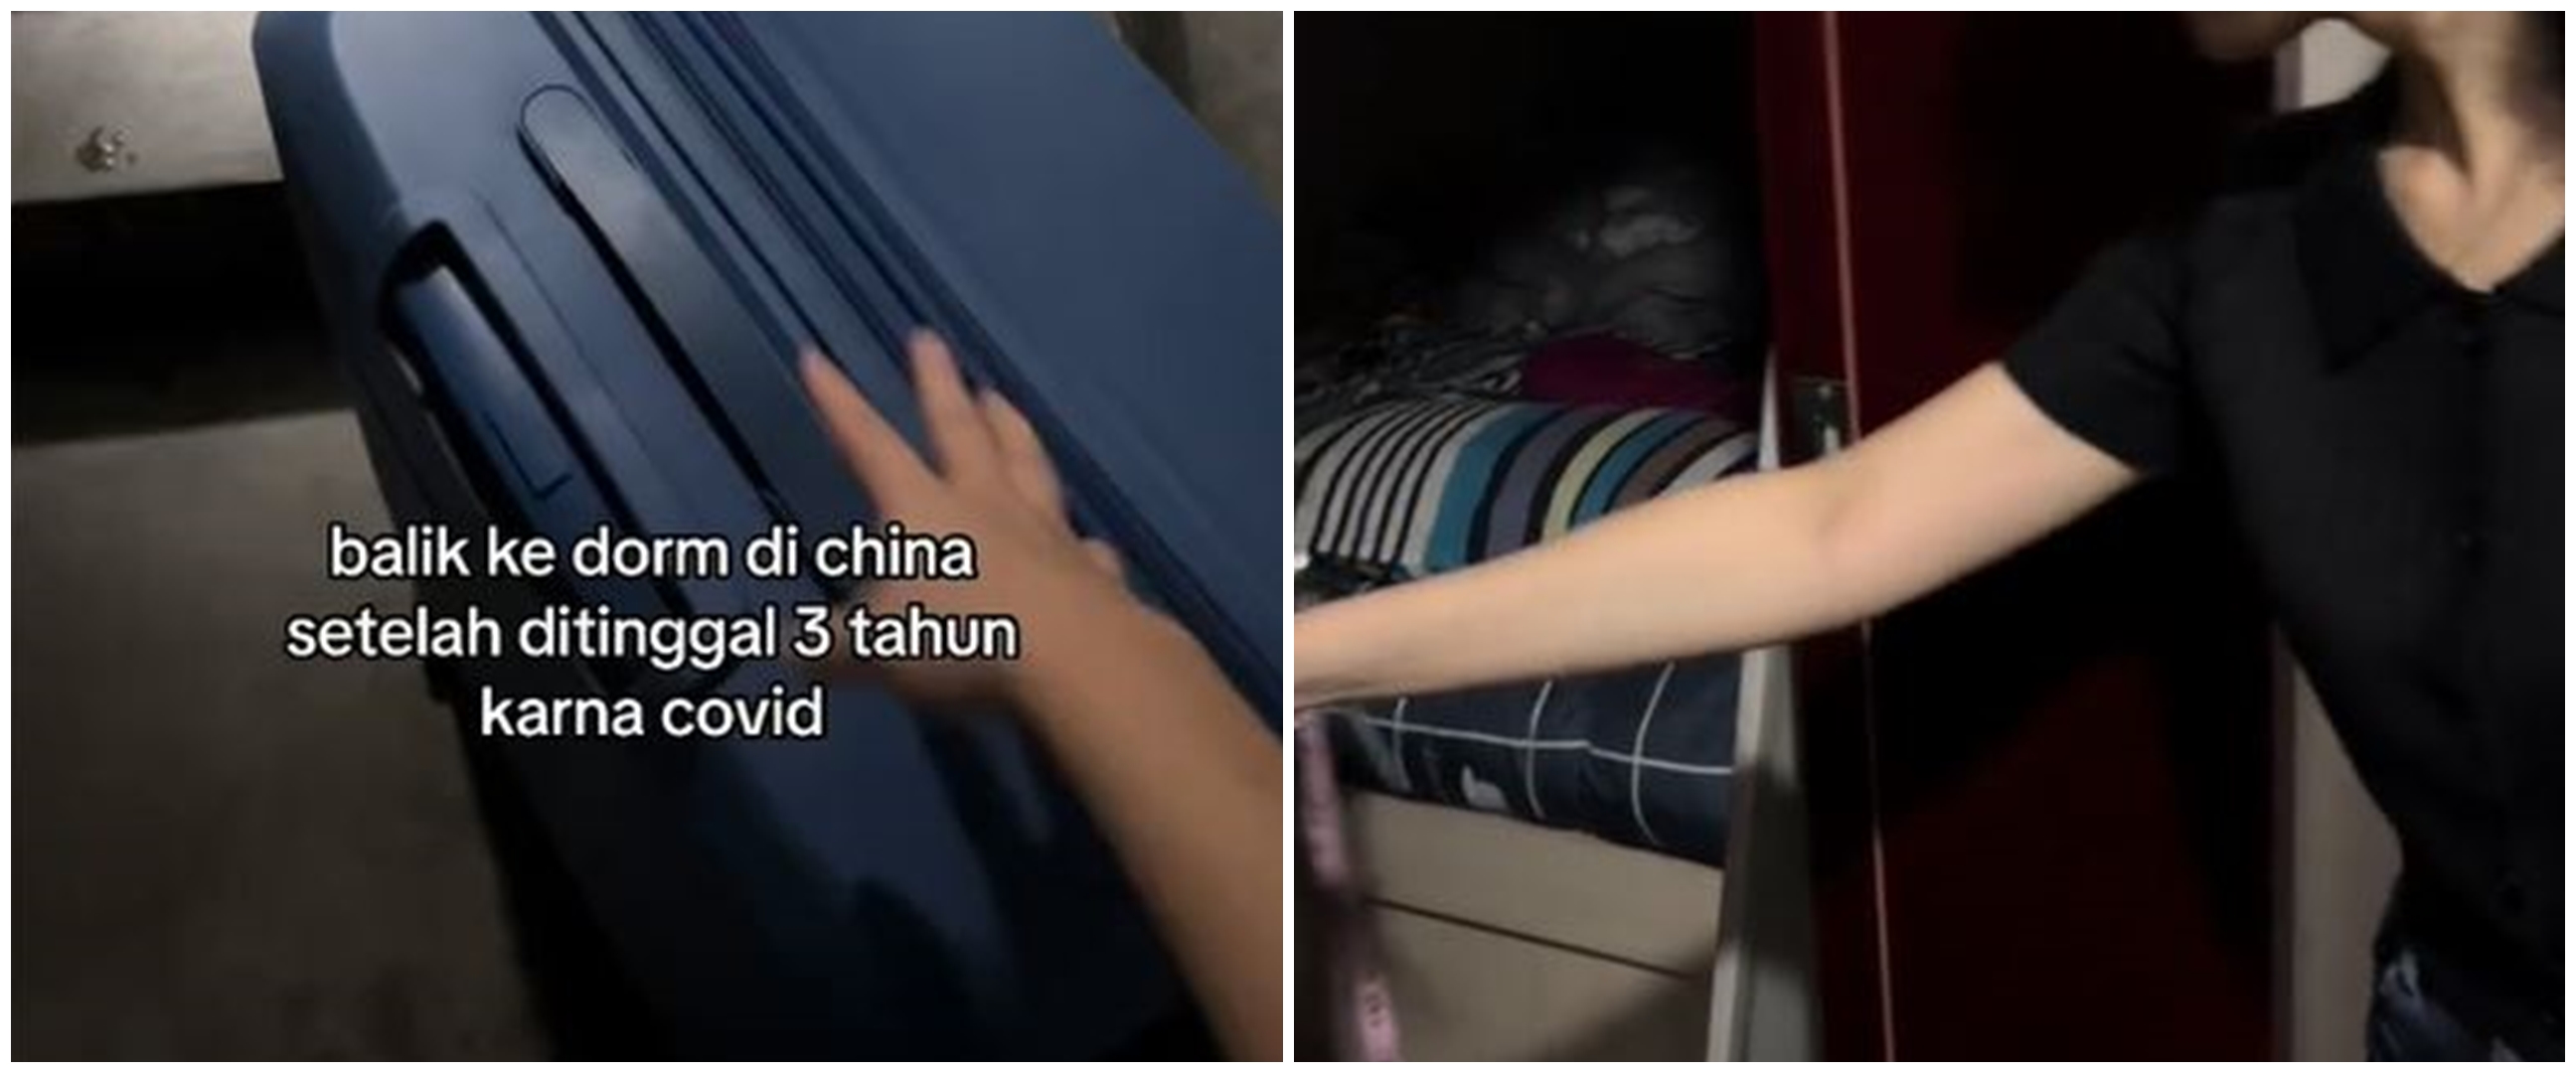 Ditinggal 3 tahun karena pandemi, penampakan asrama mahasiswa Indonesia di China ini bikin syok